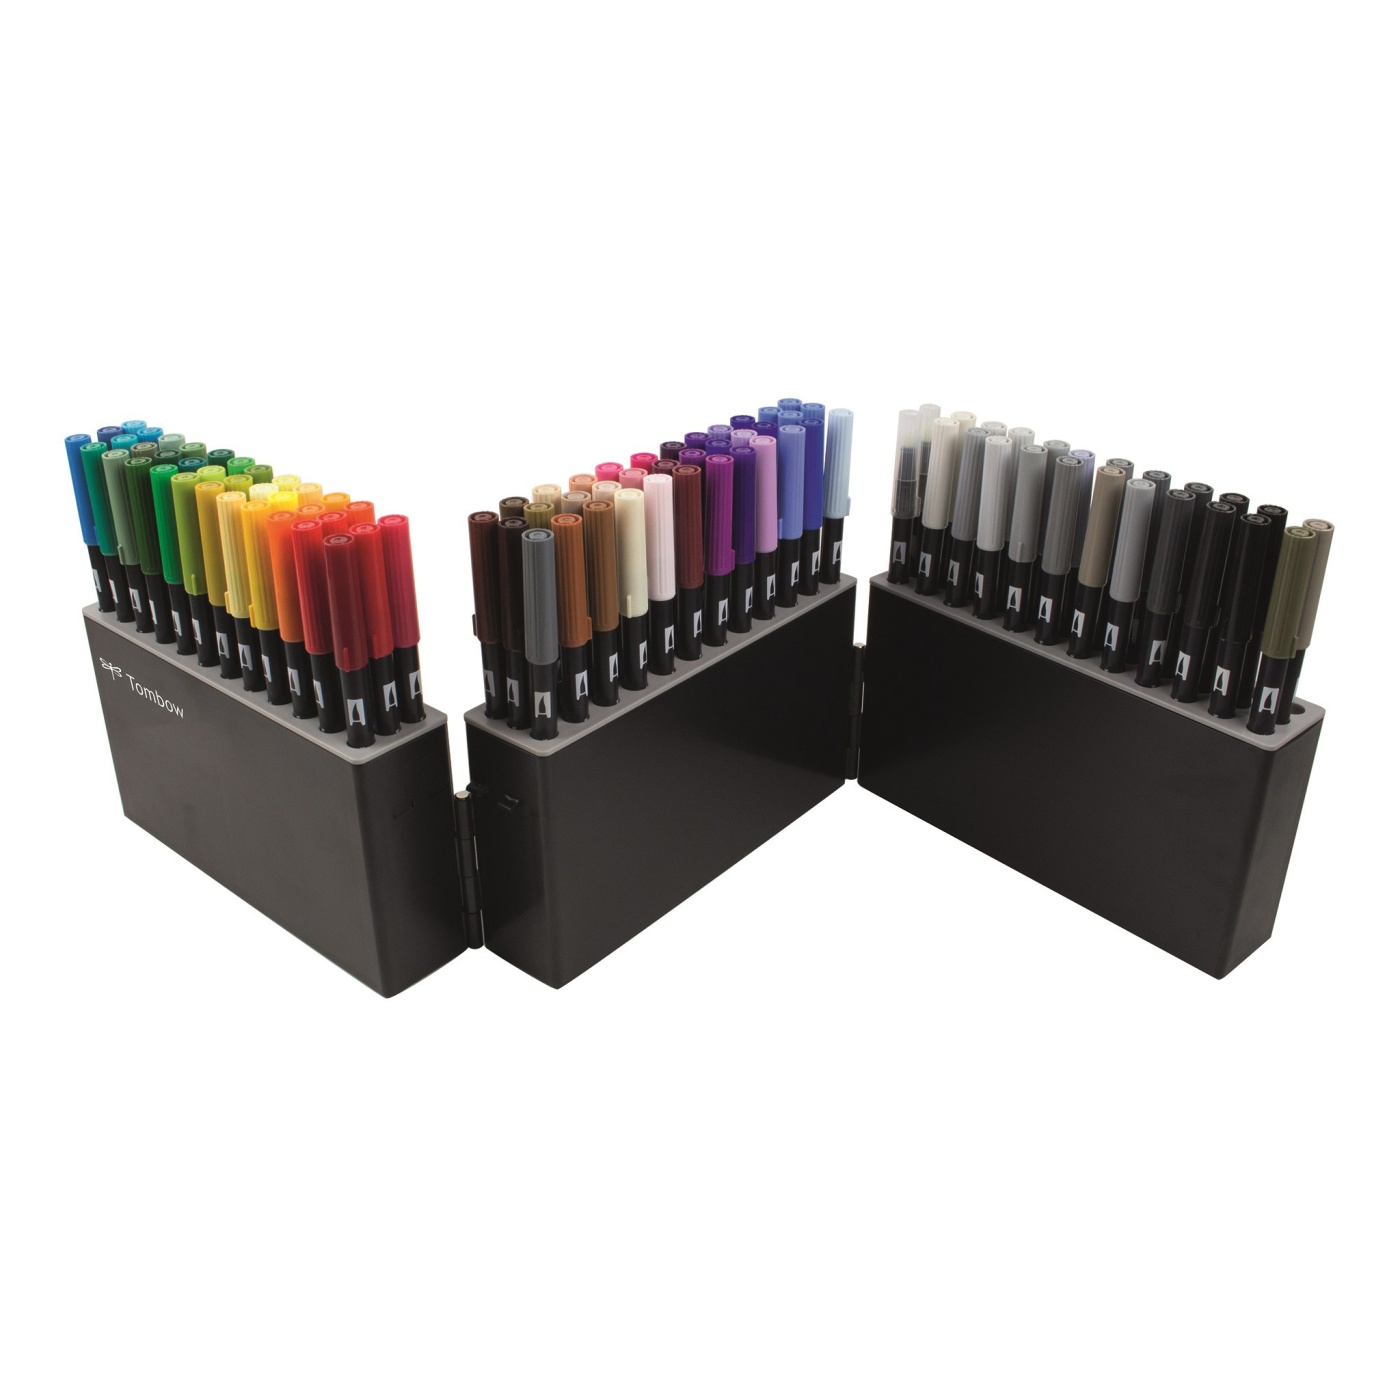 ABT Dual Brush Pen Display Box ryhmässä Kynät / Tuotesarjat / ABT Dual Brush @ Pen Store (101109)